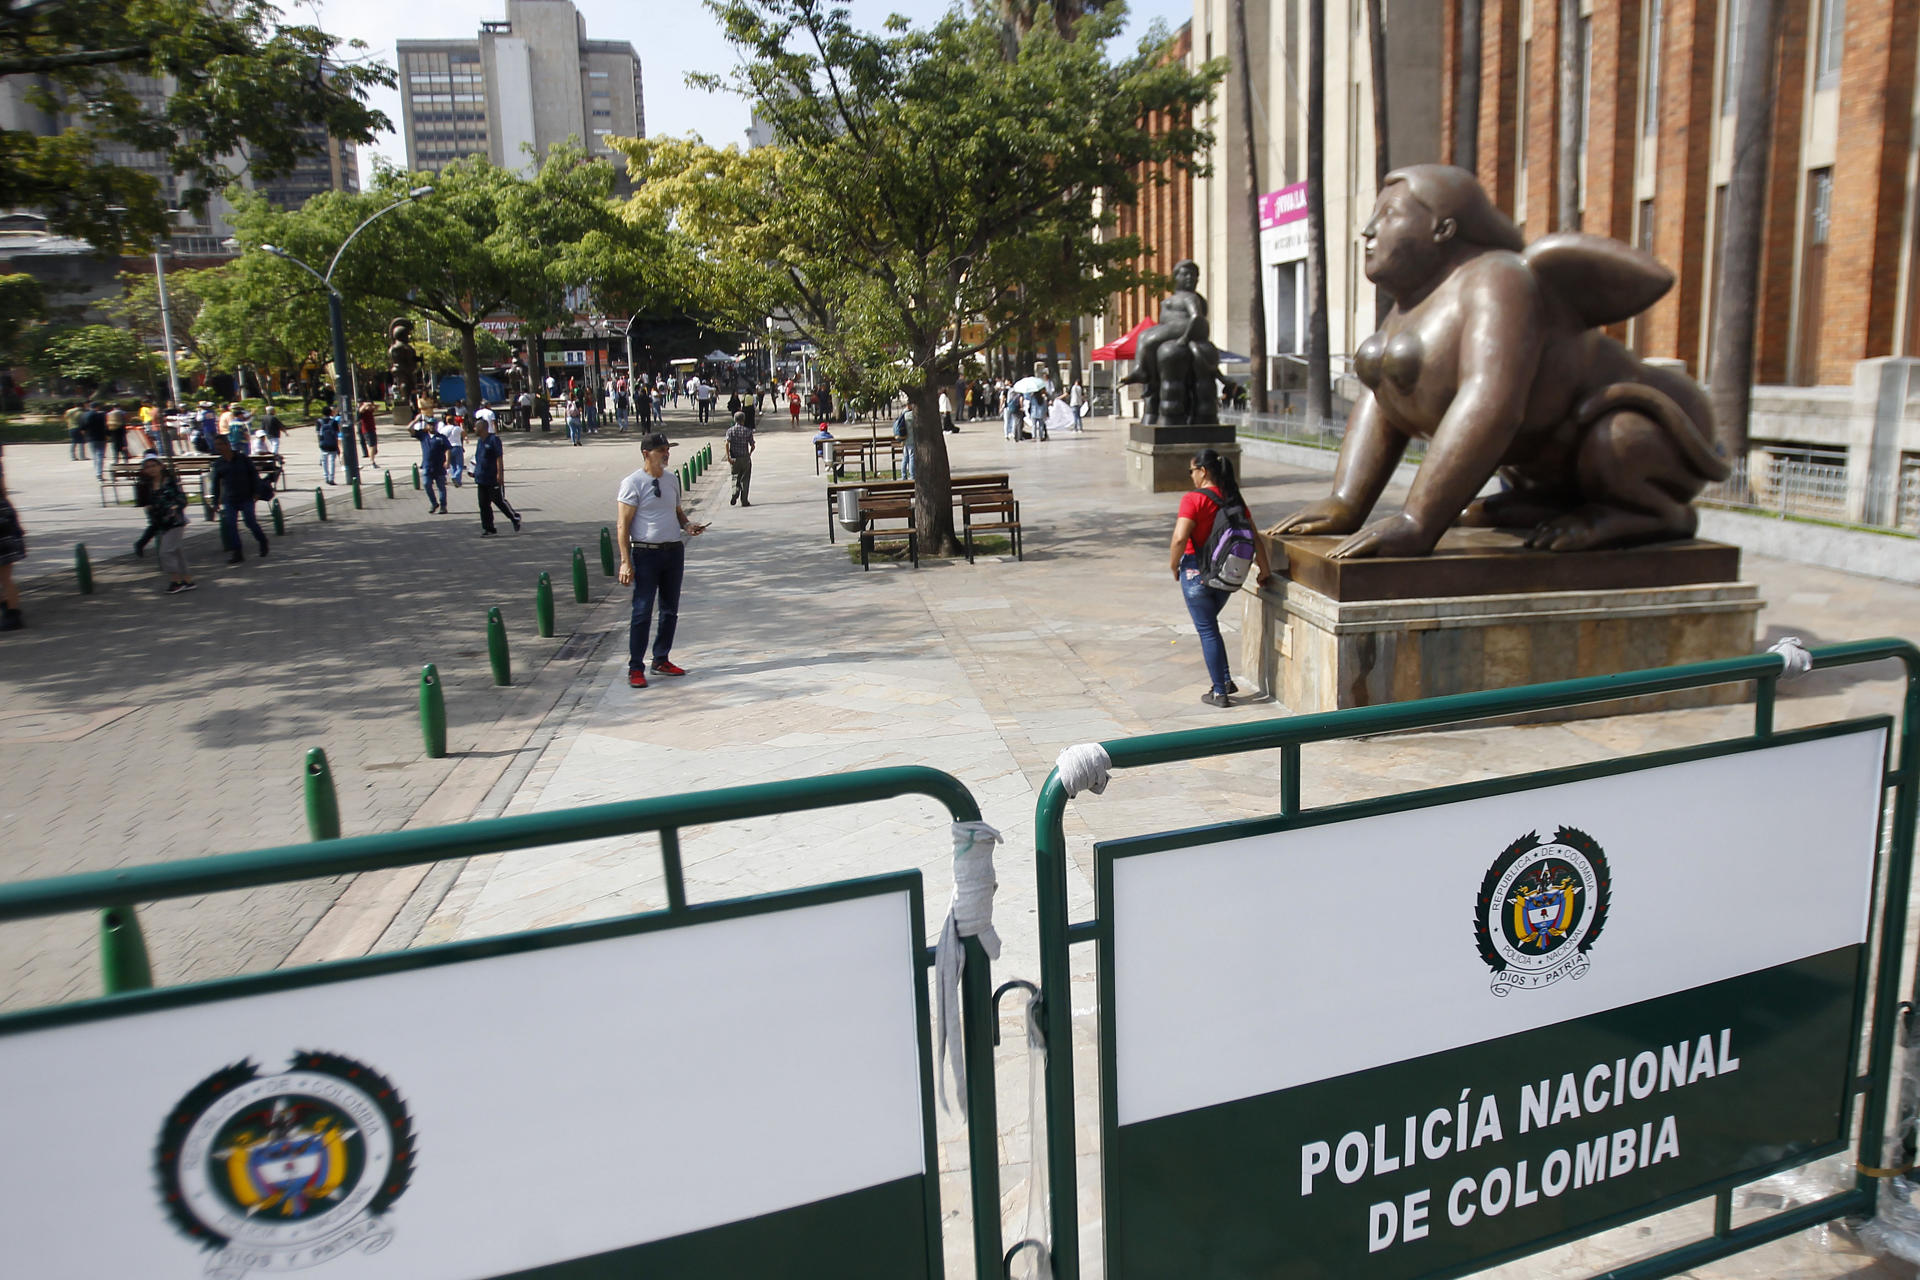 El arte de Botero reclama libertad tras polémico cierre de plaza en Medellín